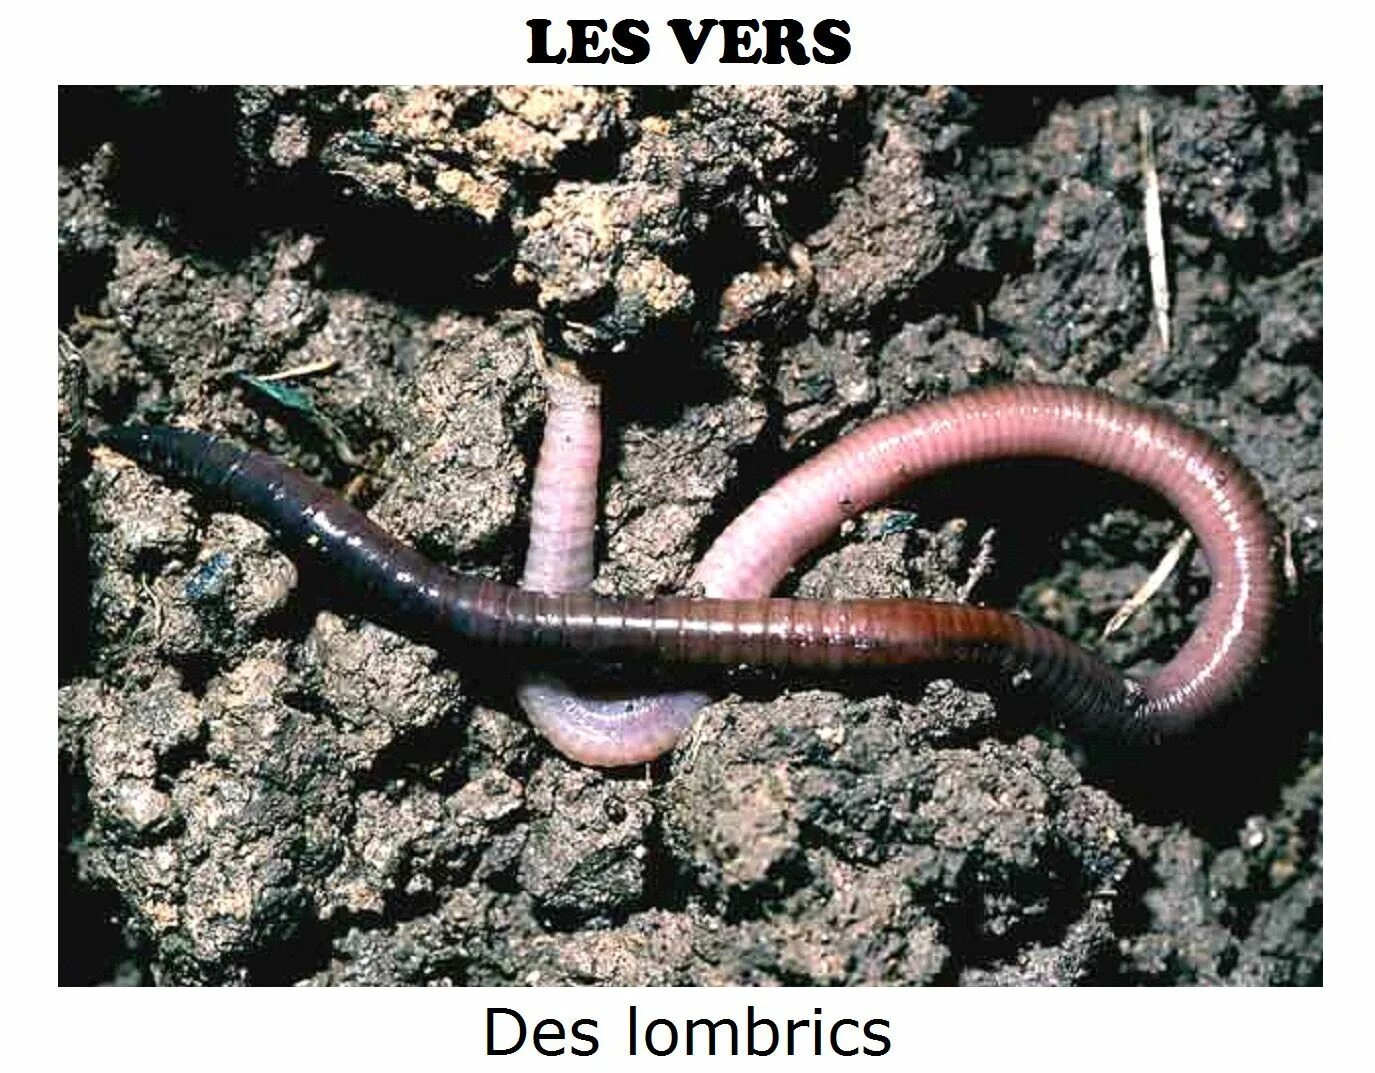 Дождевой червь какая биологическая наука. Малощетинковые дождевой червь. Червь Земляной (Lumbricus terrestris). Кольчатые черви олигохеты. Дождевые черви среда обитания.